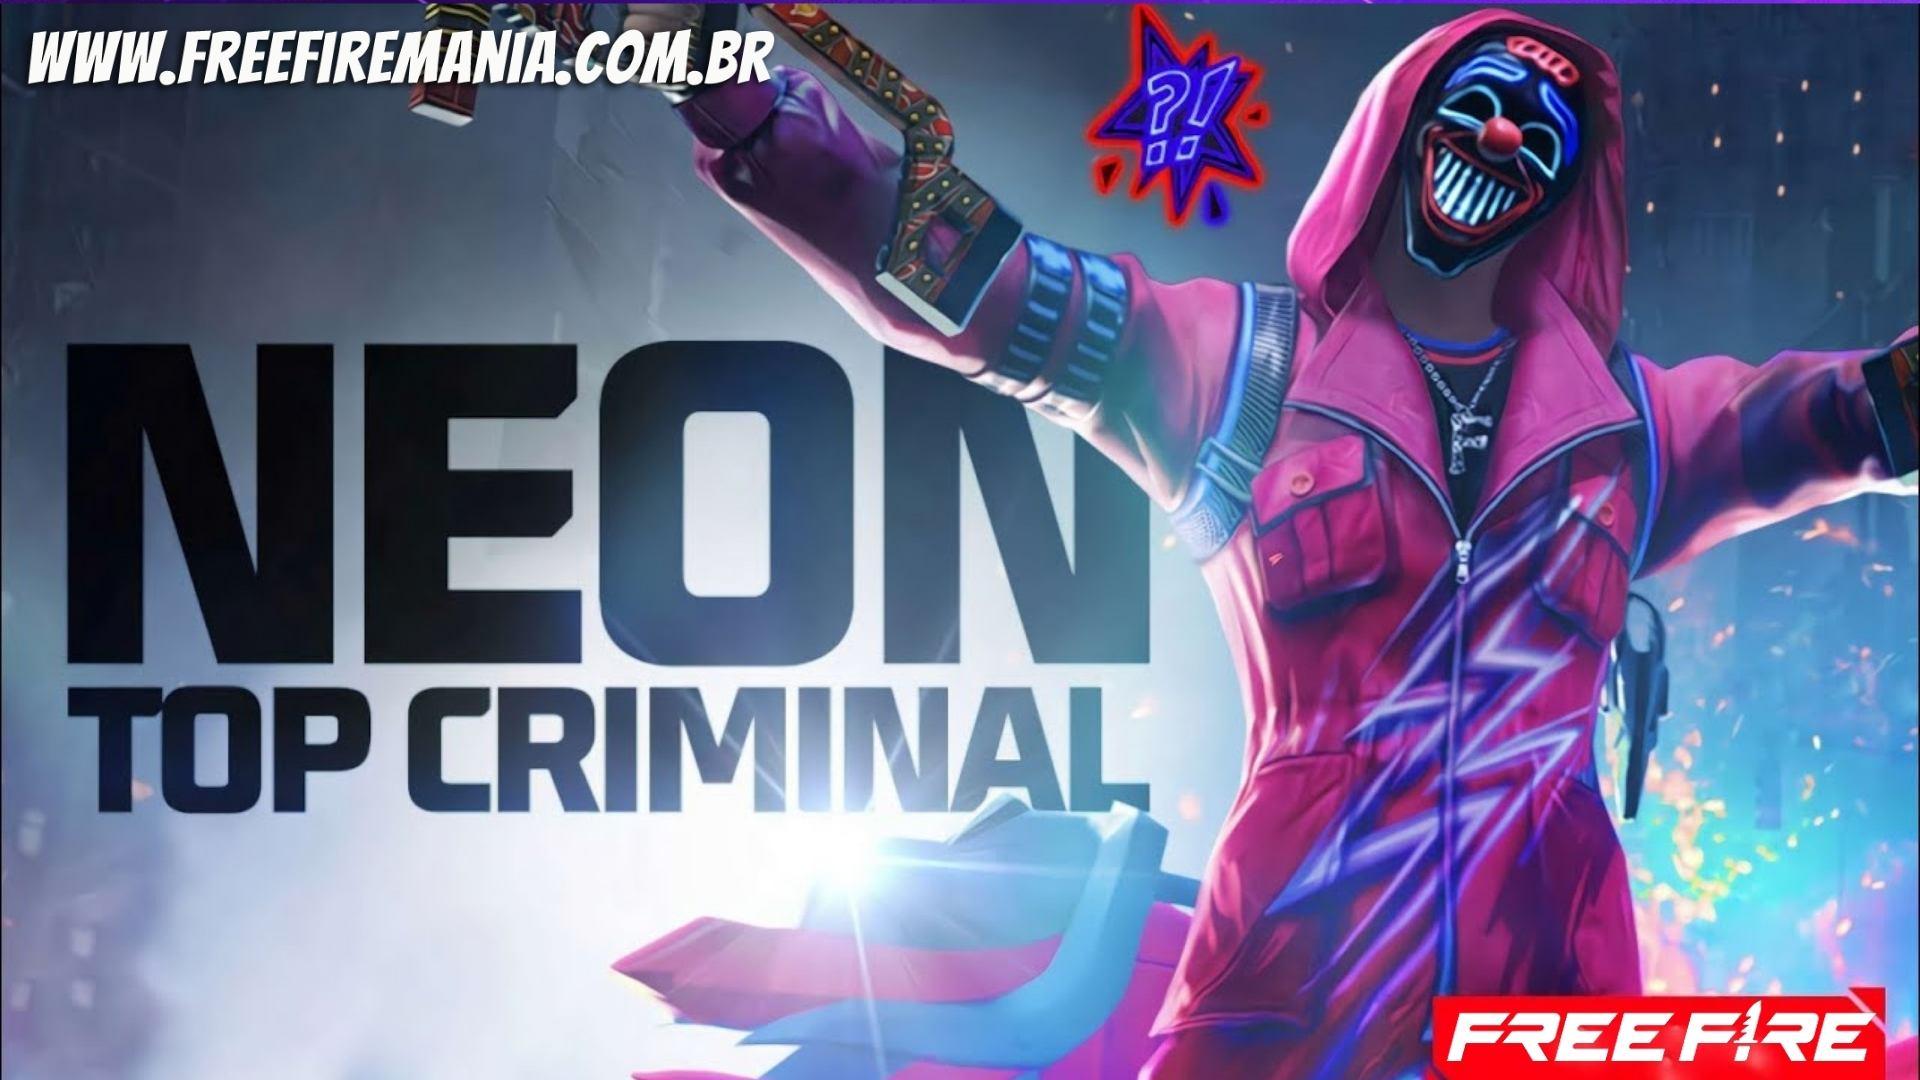 Top Criminal Neon no Free Fire: tanggal rilis, efek khusus, dan lainnya dari Top Frifas